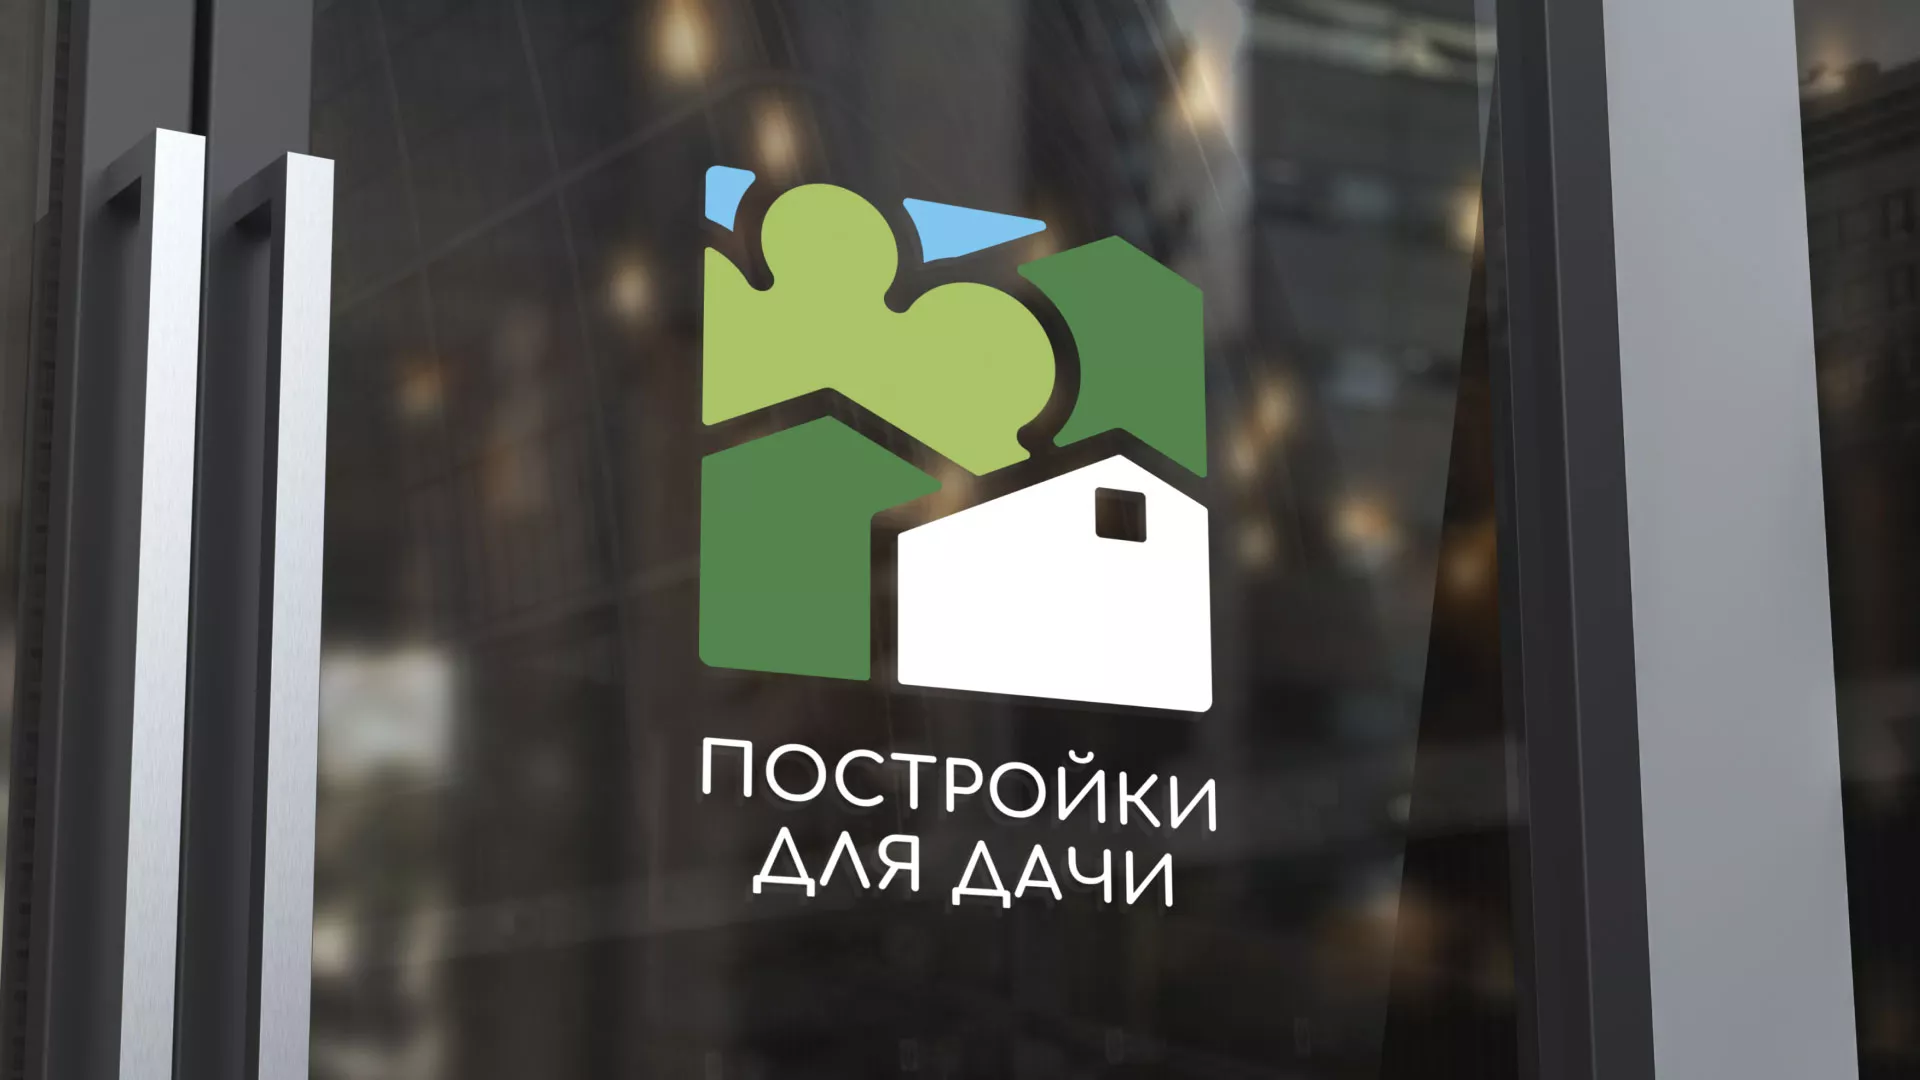 Разработка логотипа в Ипатово для компании «Постройки для дачи»